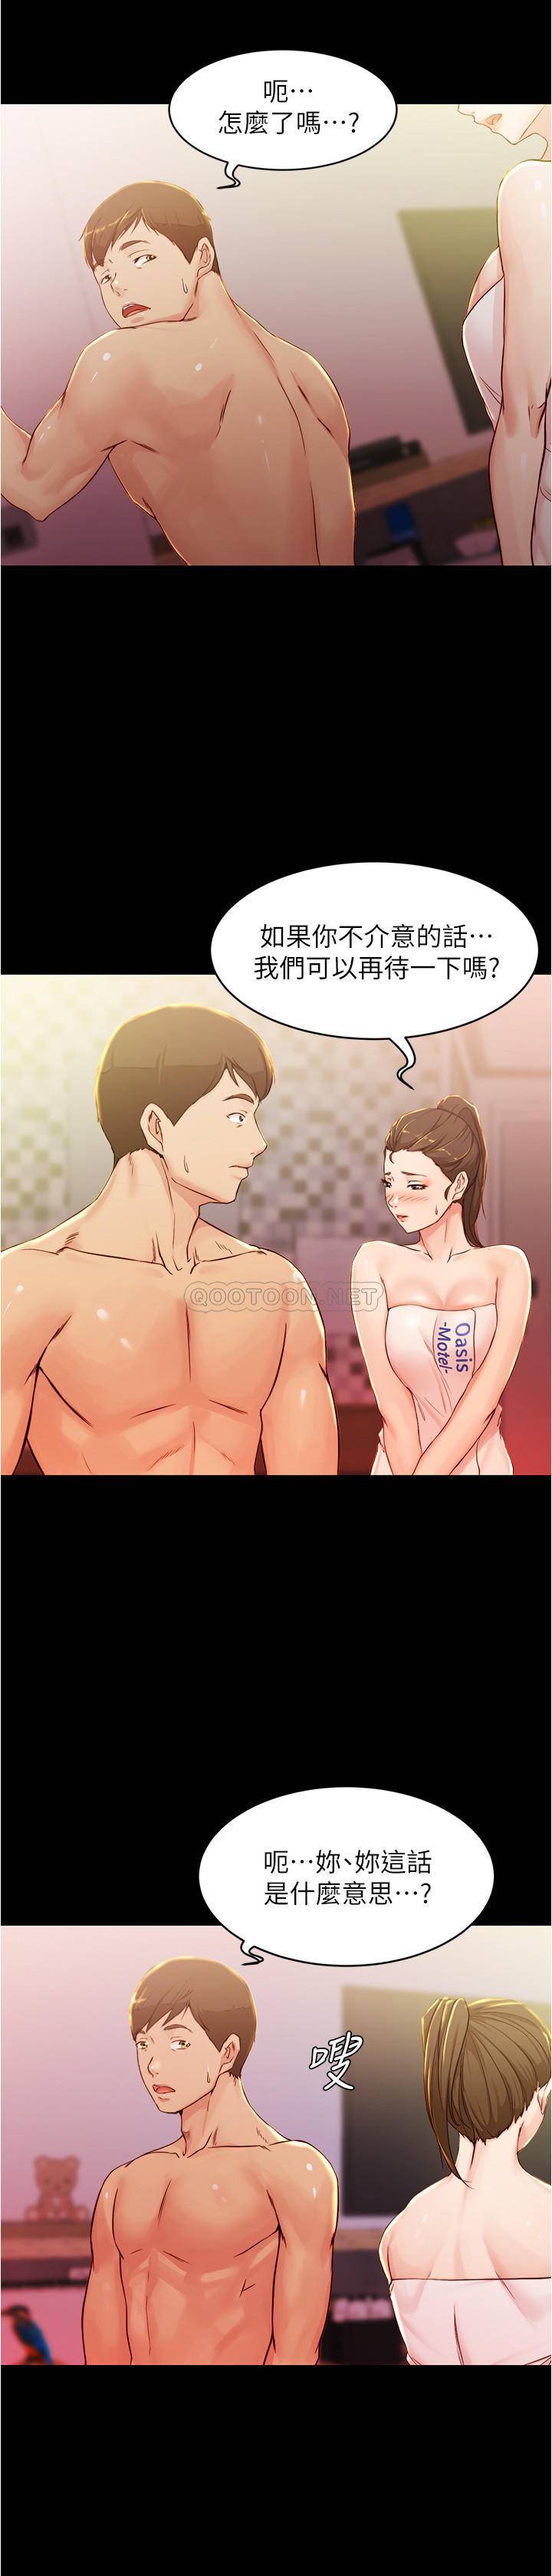 韩国污漫画 小褲褲筆記 第26话 - 为了更令人满意的性爱 23